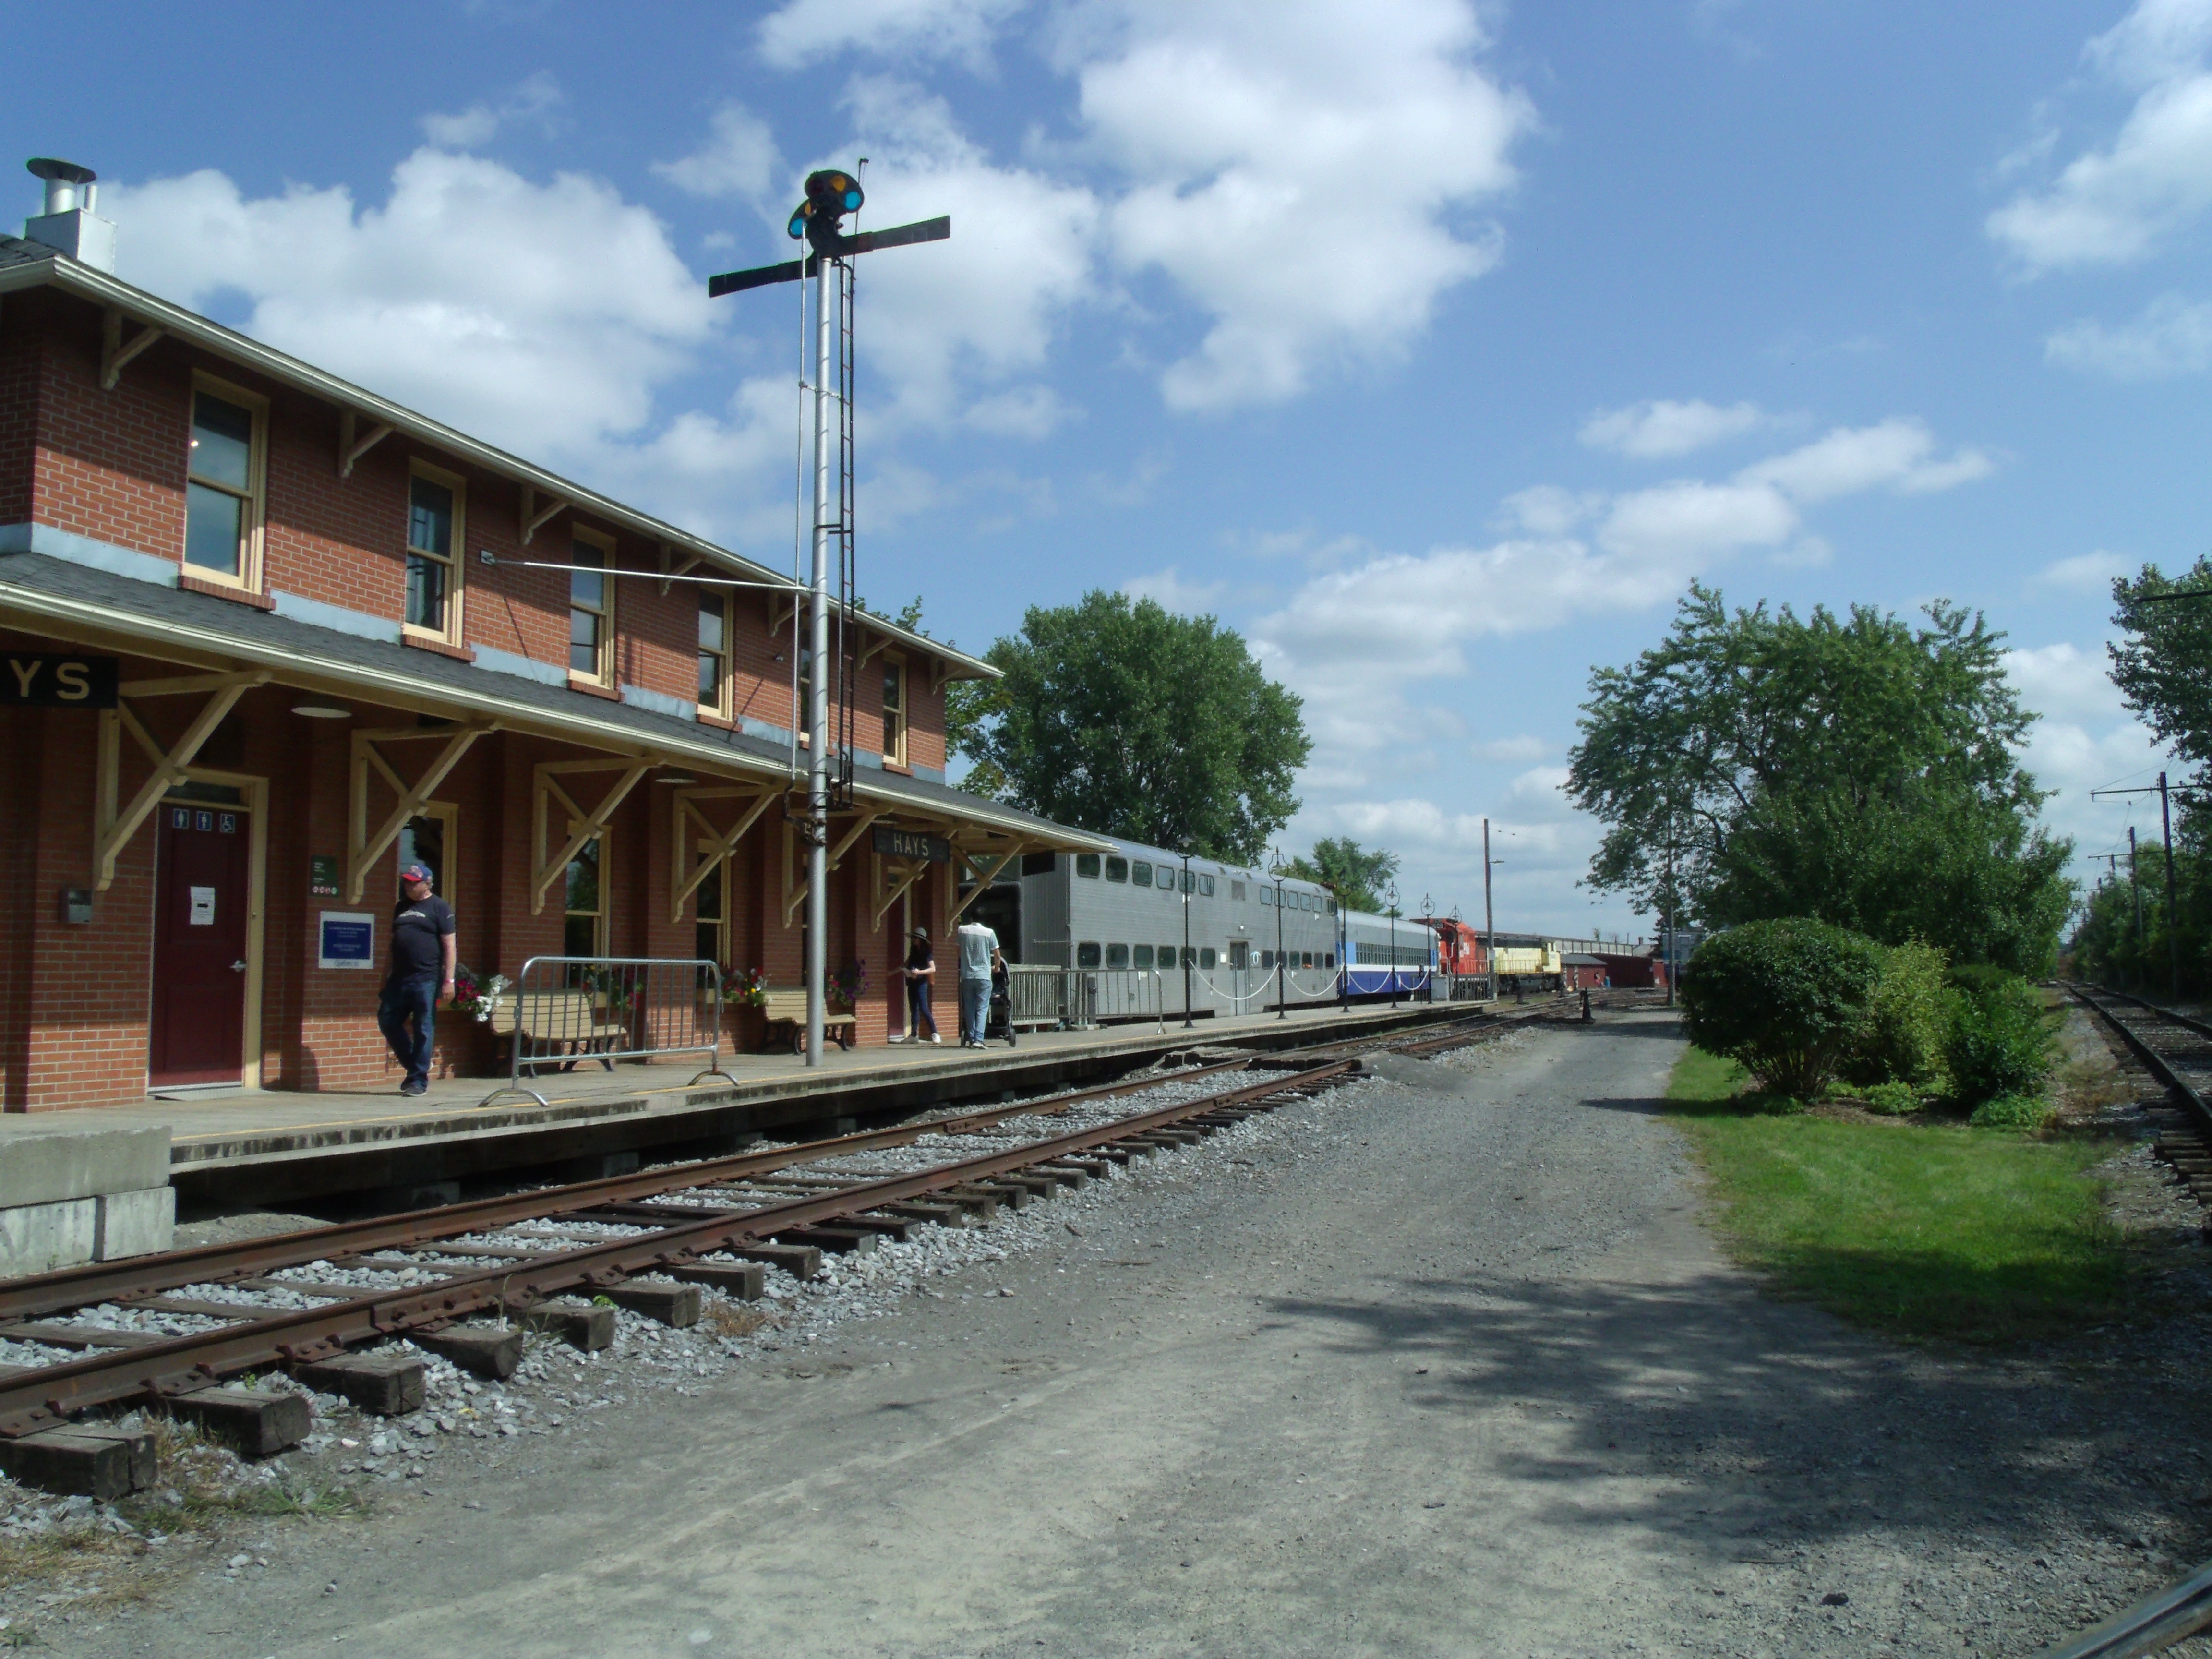 Une gare et le chemin de fer qui passe devant, au loin des trains garés.